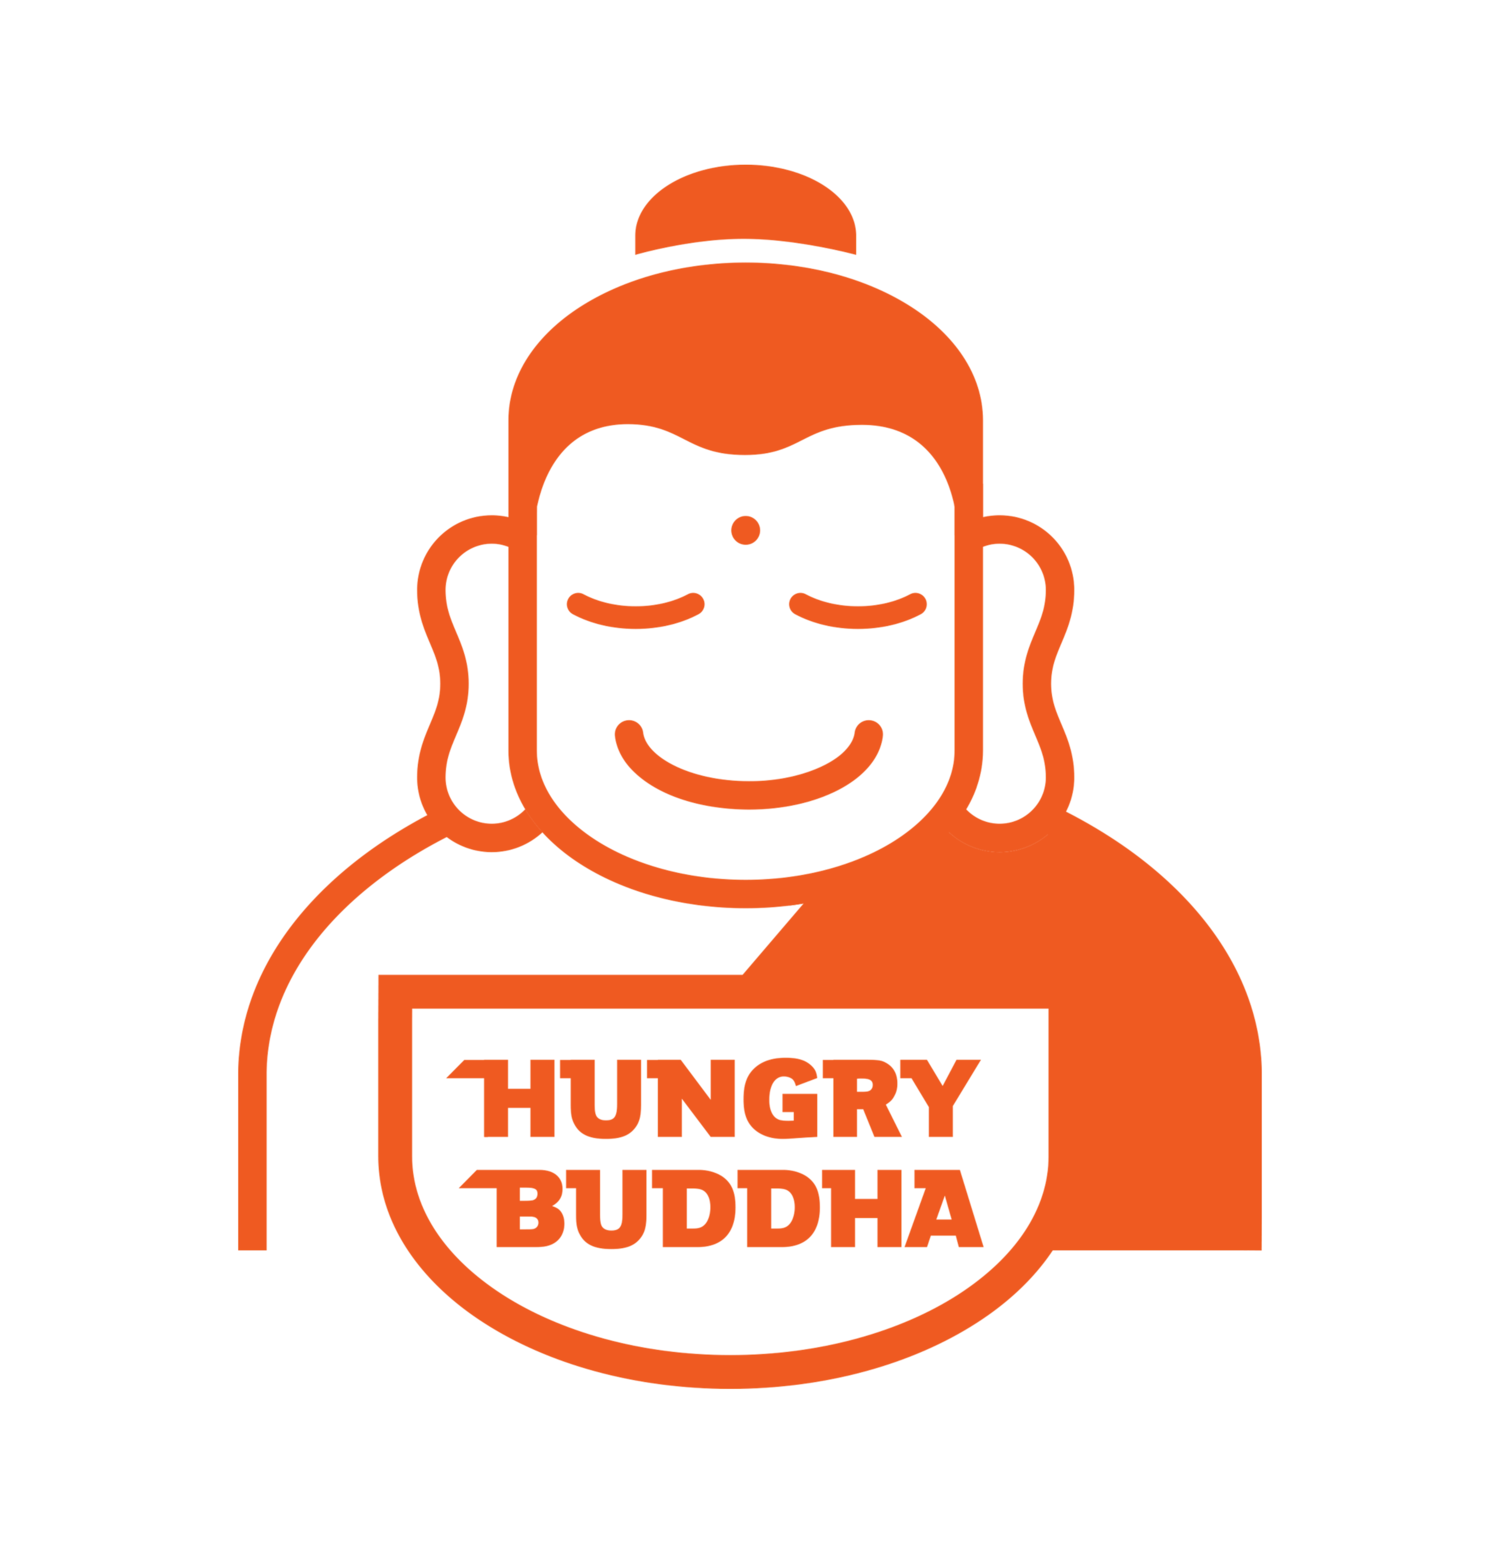 Hungry Buddha